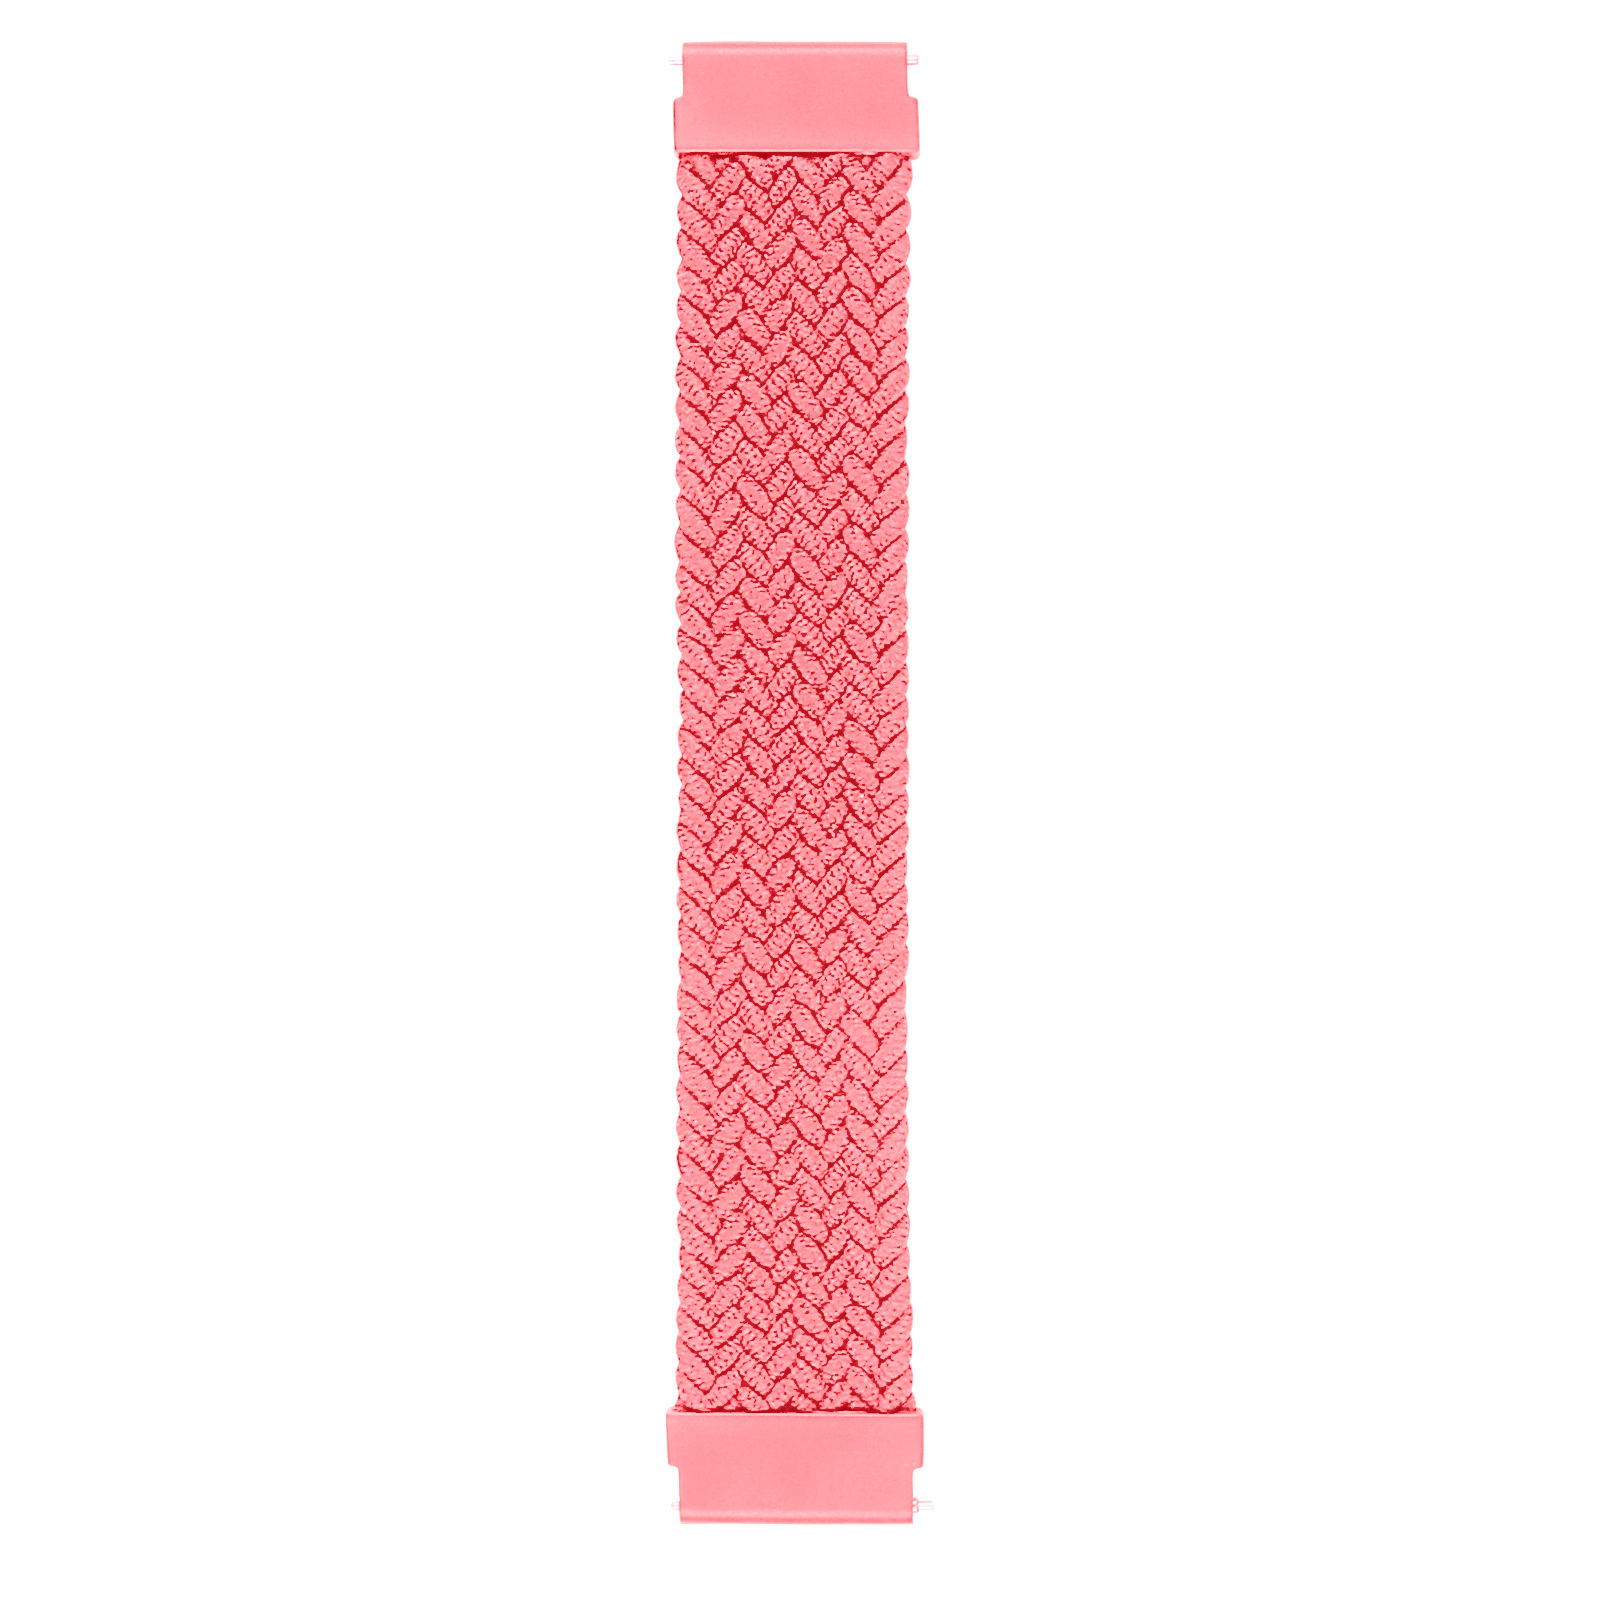 Huawei Watch GT nylon gevlochten solo band - roze punch